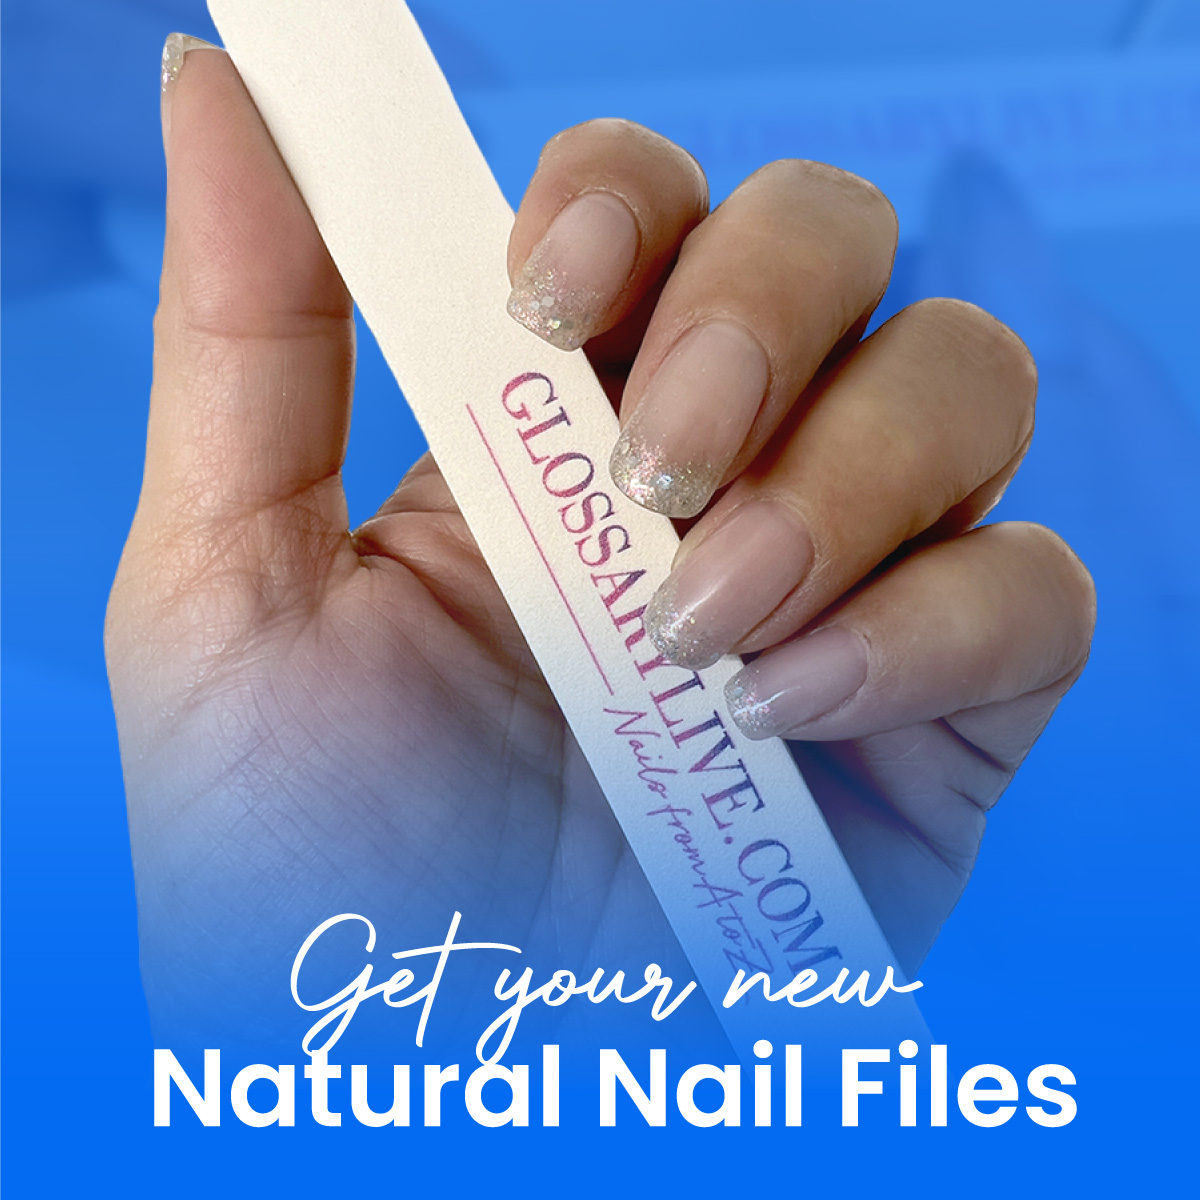 GlossaryLive Natural Nail Files